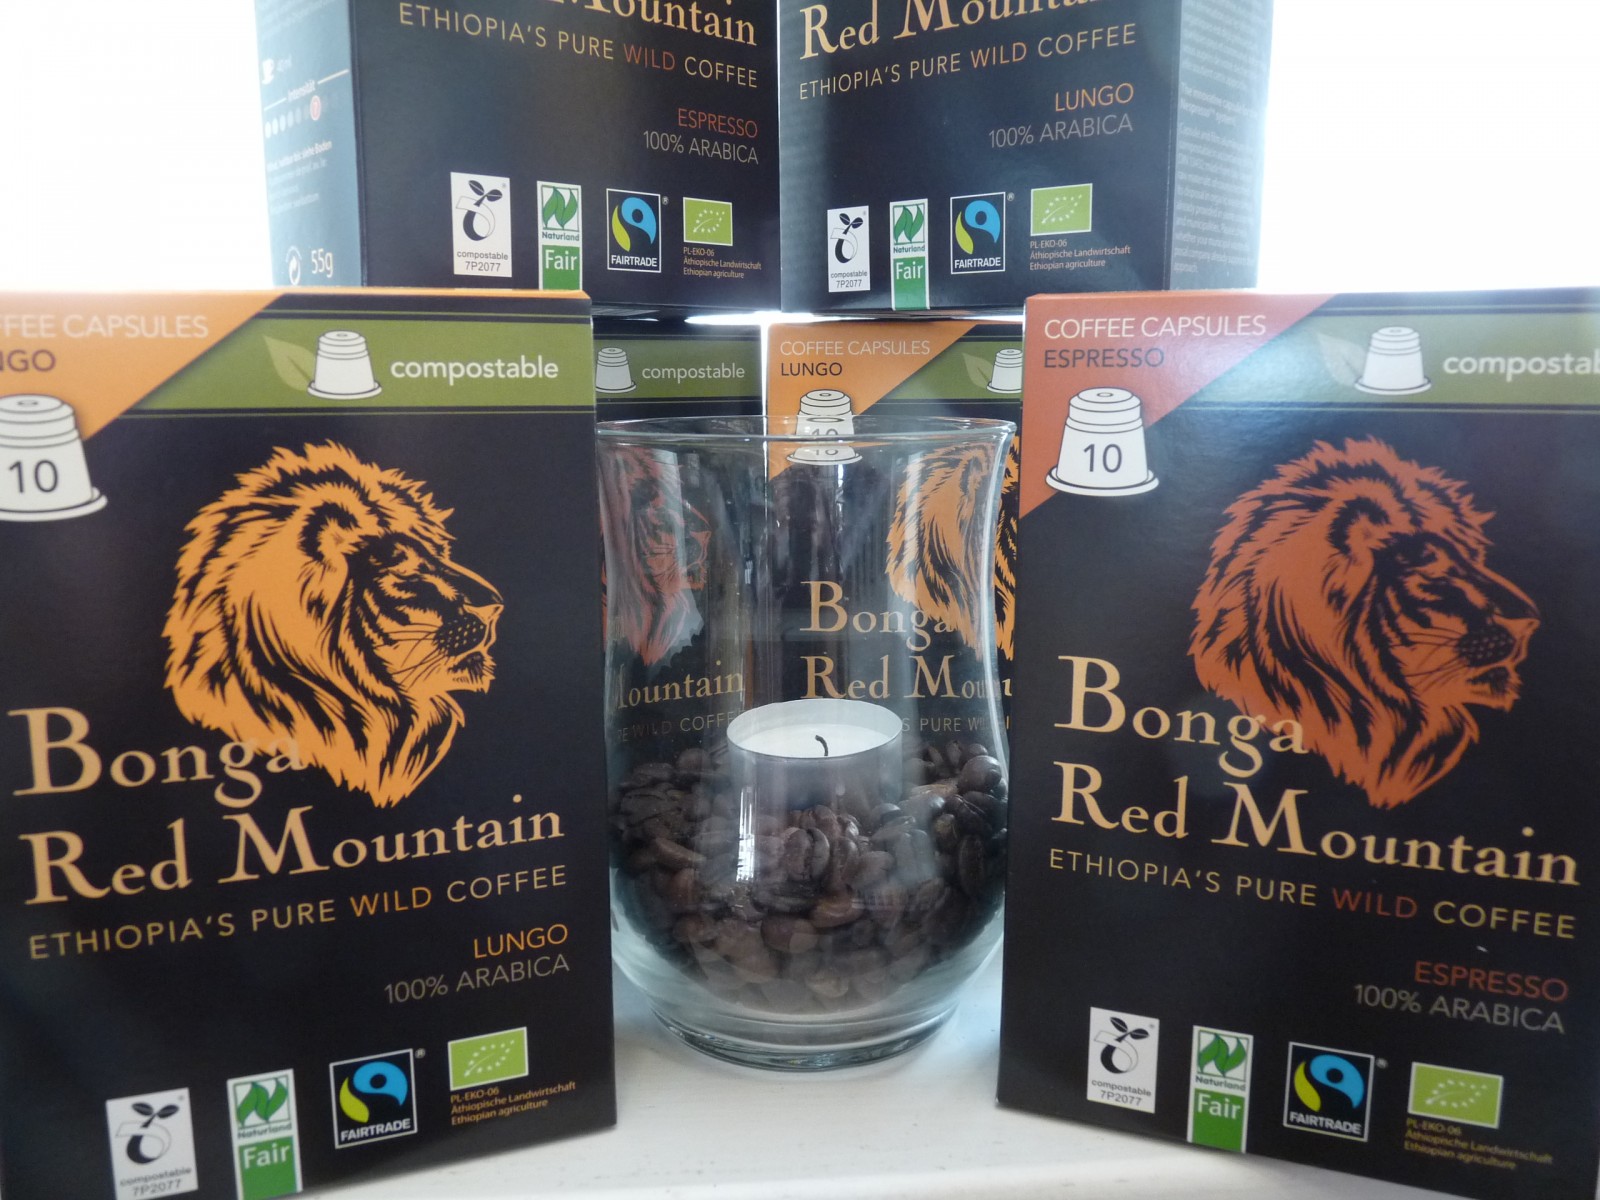 Bonga Red Mountain Kaffeekapseln Wildkaffee (100% Arabica) aus Äthiopien in zwei Röstungen: Espresso und Lungo